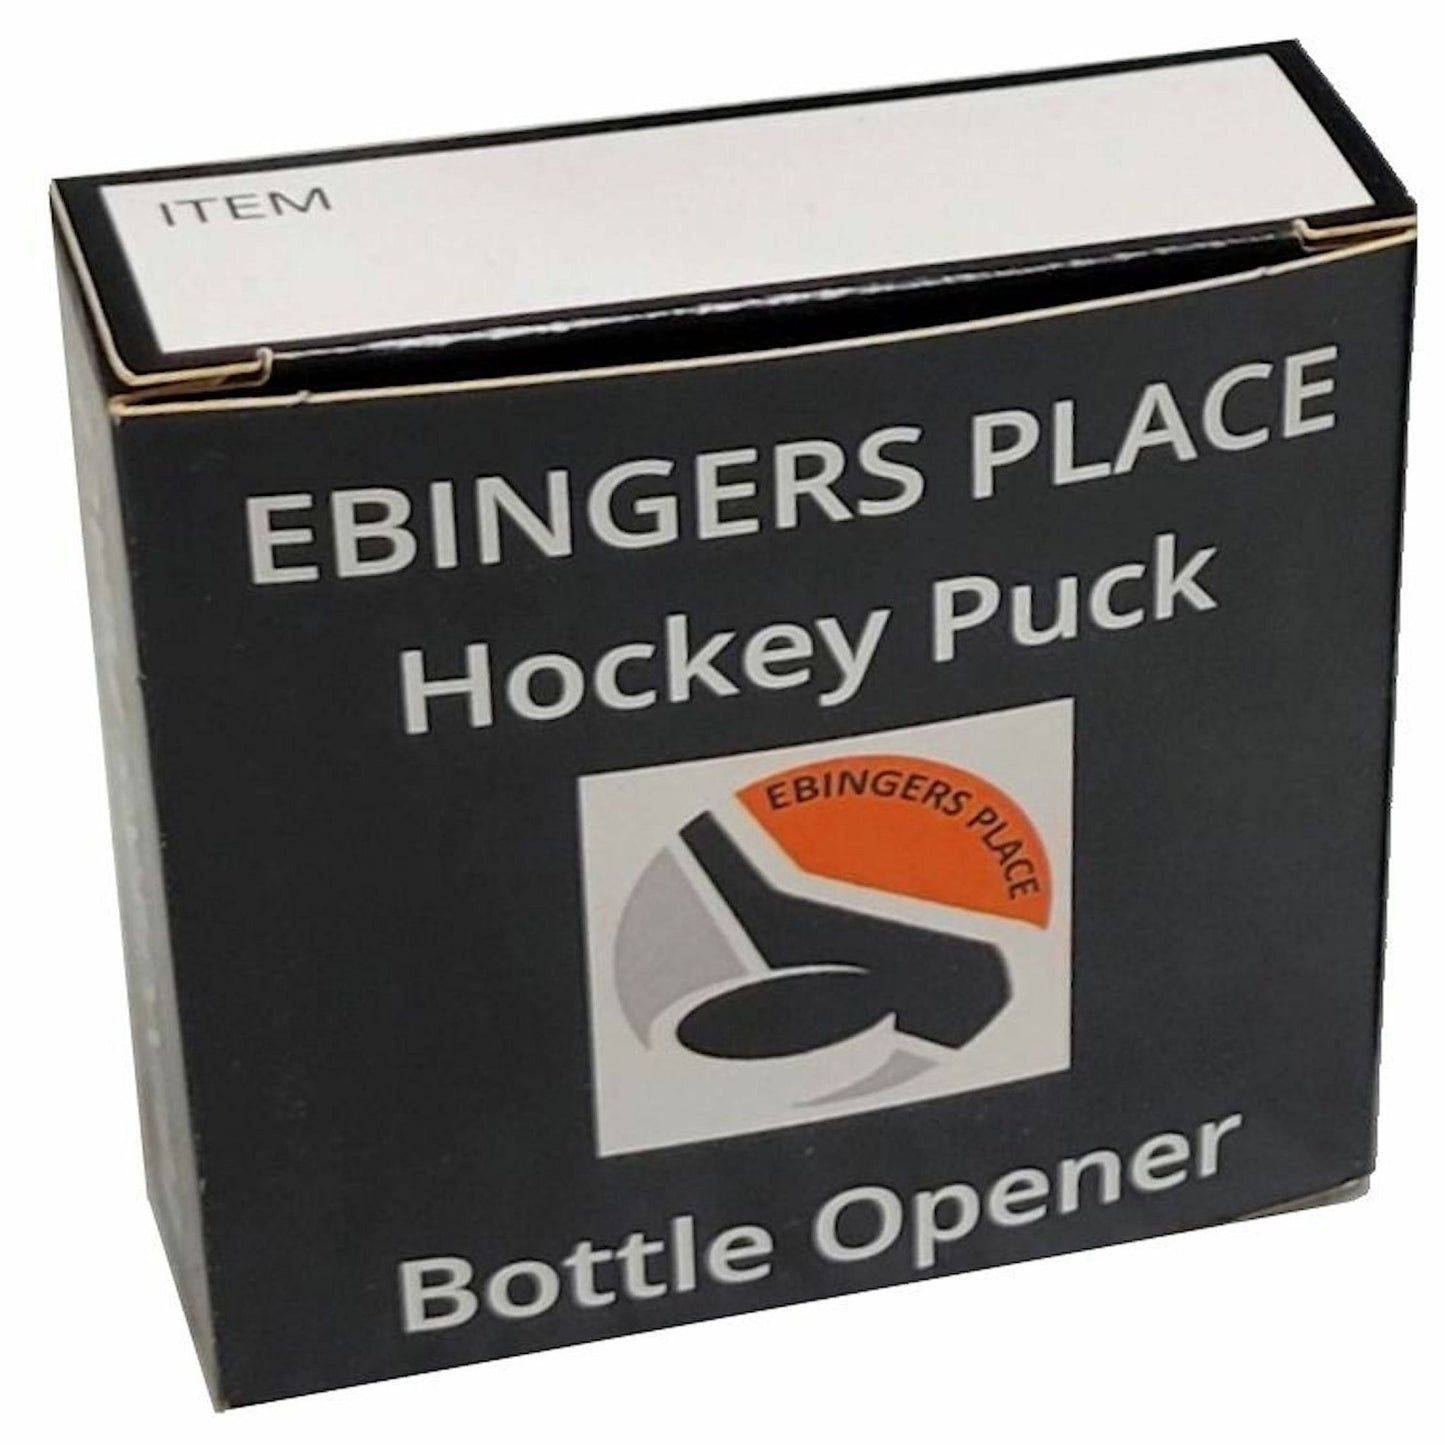 Tampa Bay Lightning Basic Series Hockey Puck Bottle Opener